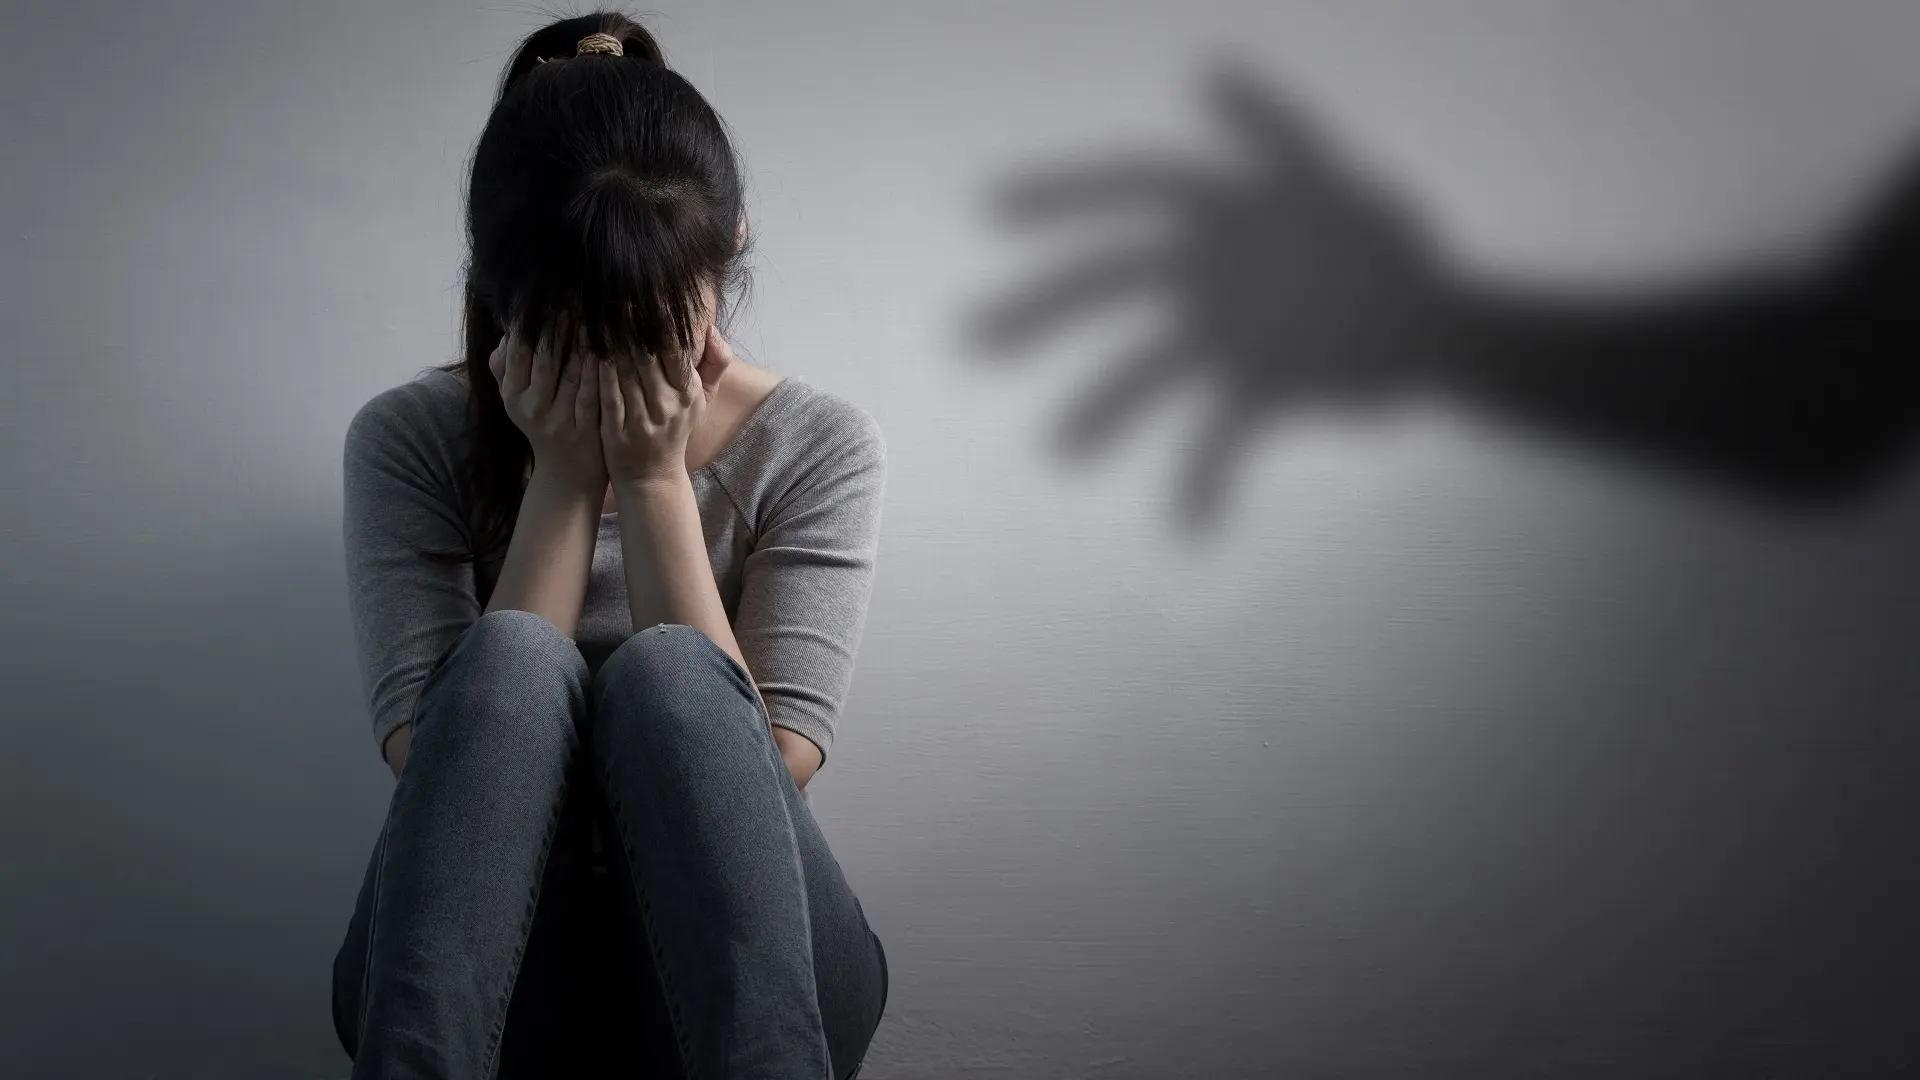 seksualno zlostavljanje nasilje maltretiranje porodično nasilje u porodici, silovanje - shutterstock-65f9a1792e210.webp